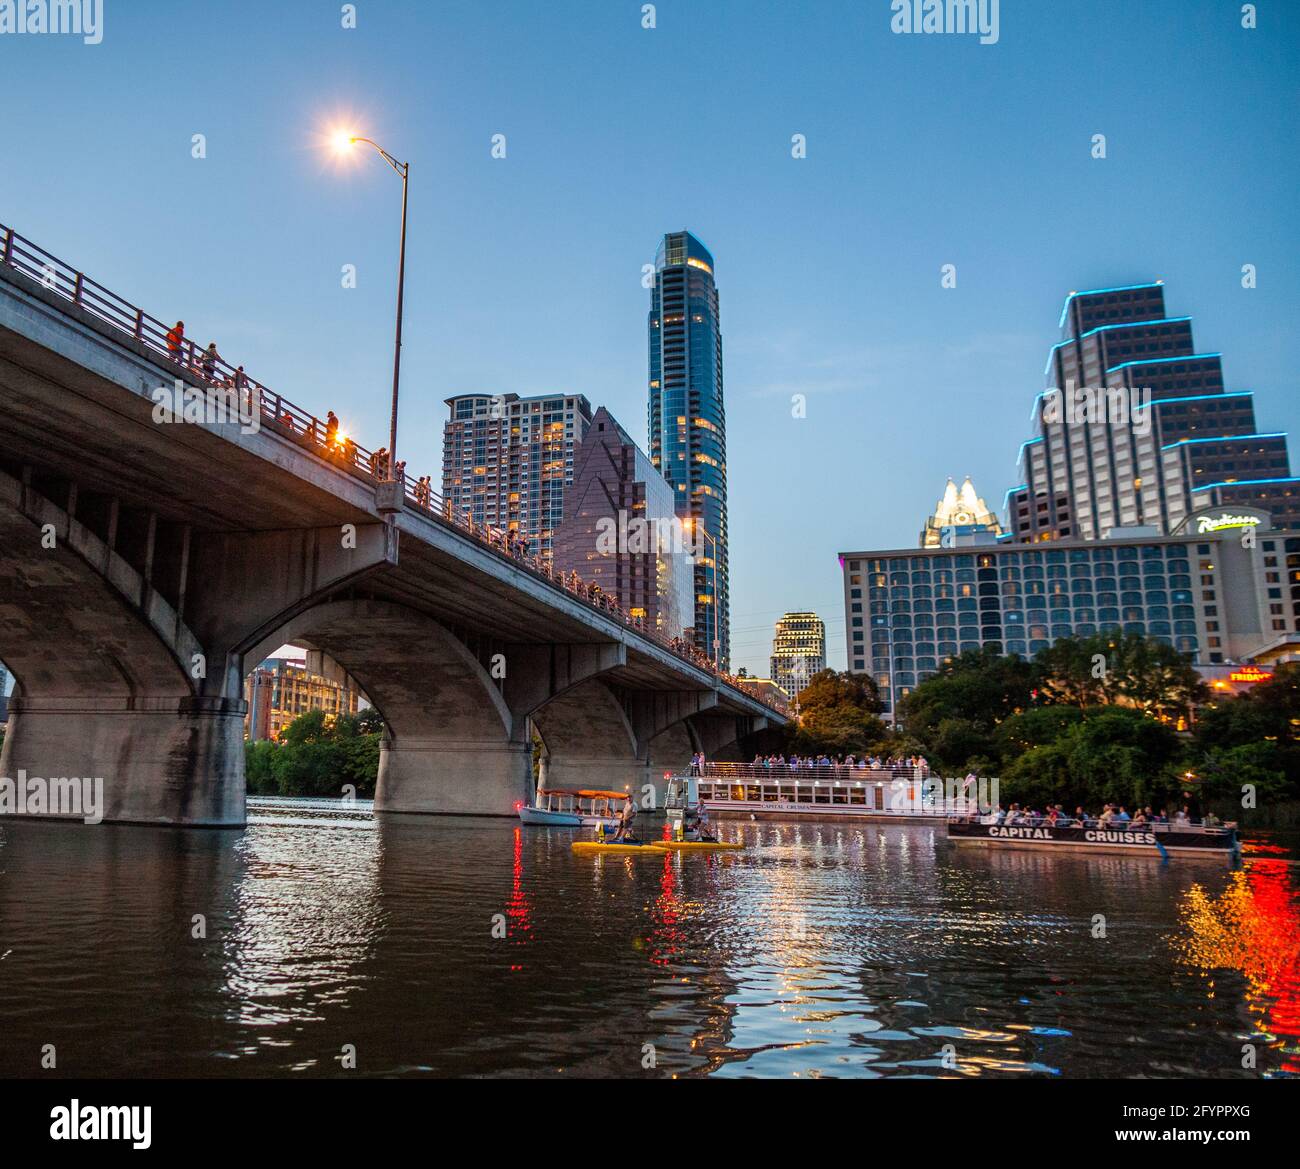 Horizonte de la ciudad de Austin por la noche con el puente de congresos South Congress Bridge desde el río Colorado. Austin, Texas, Estados Unidos Foto de stock